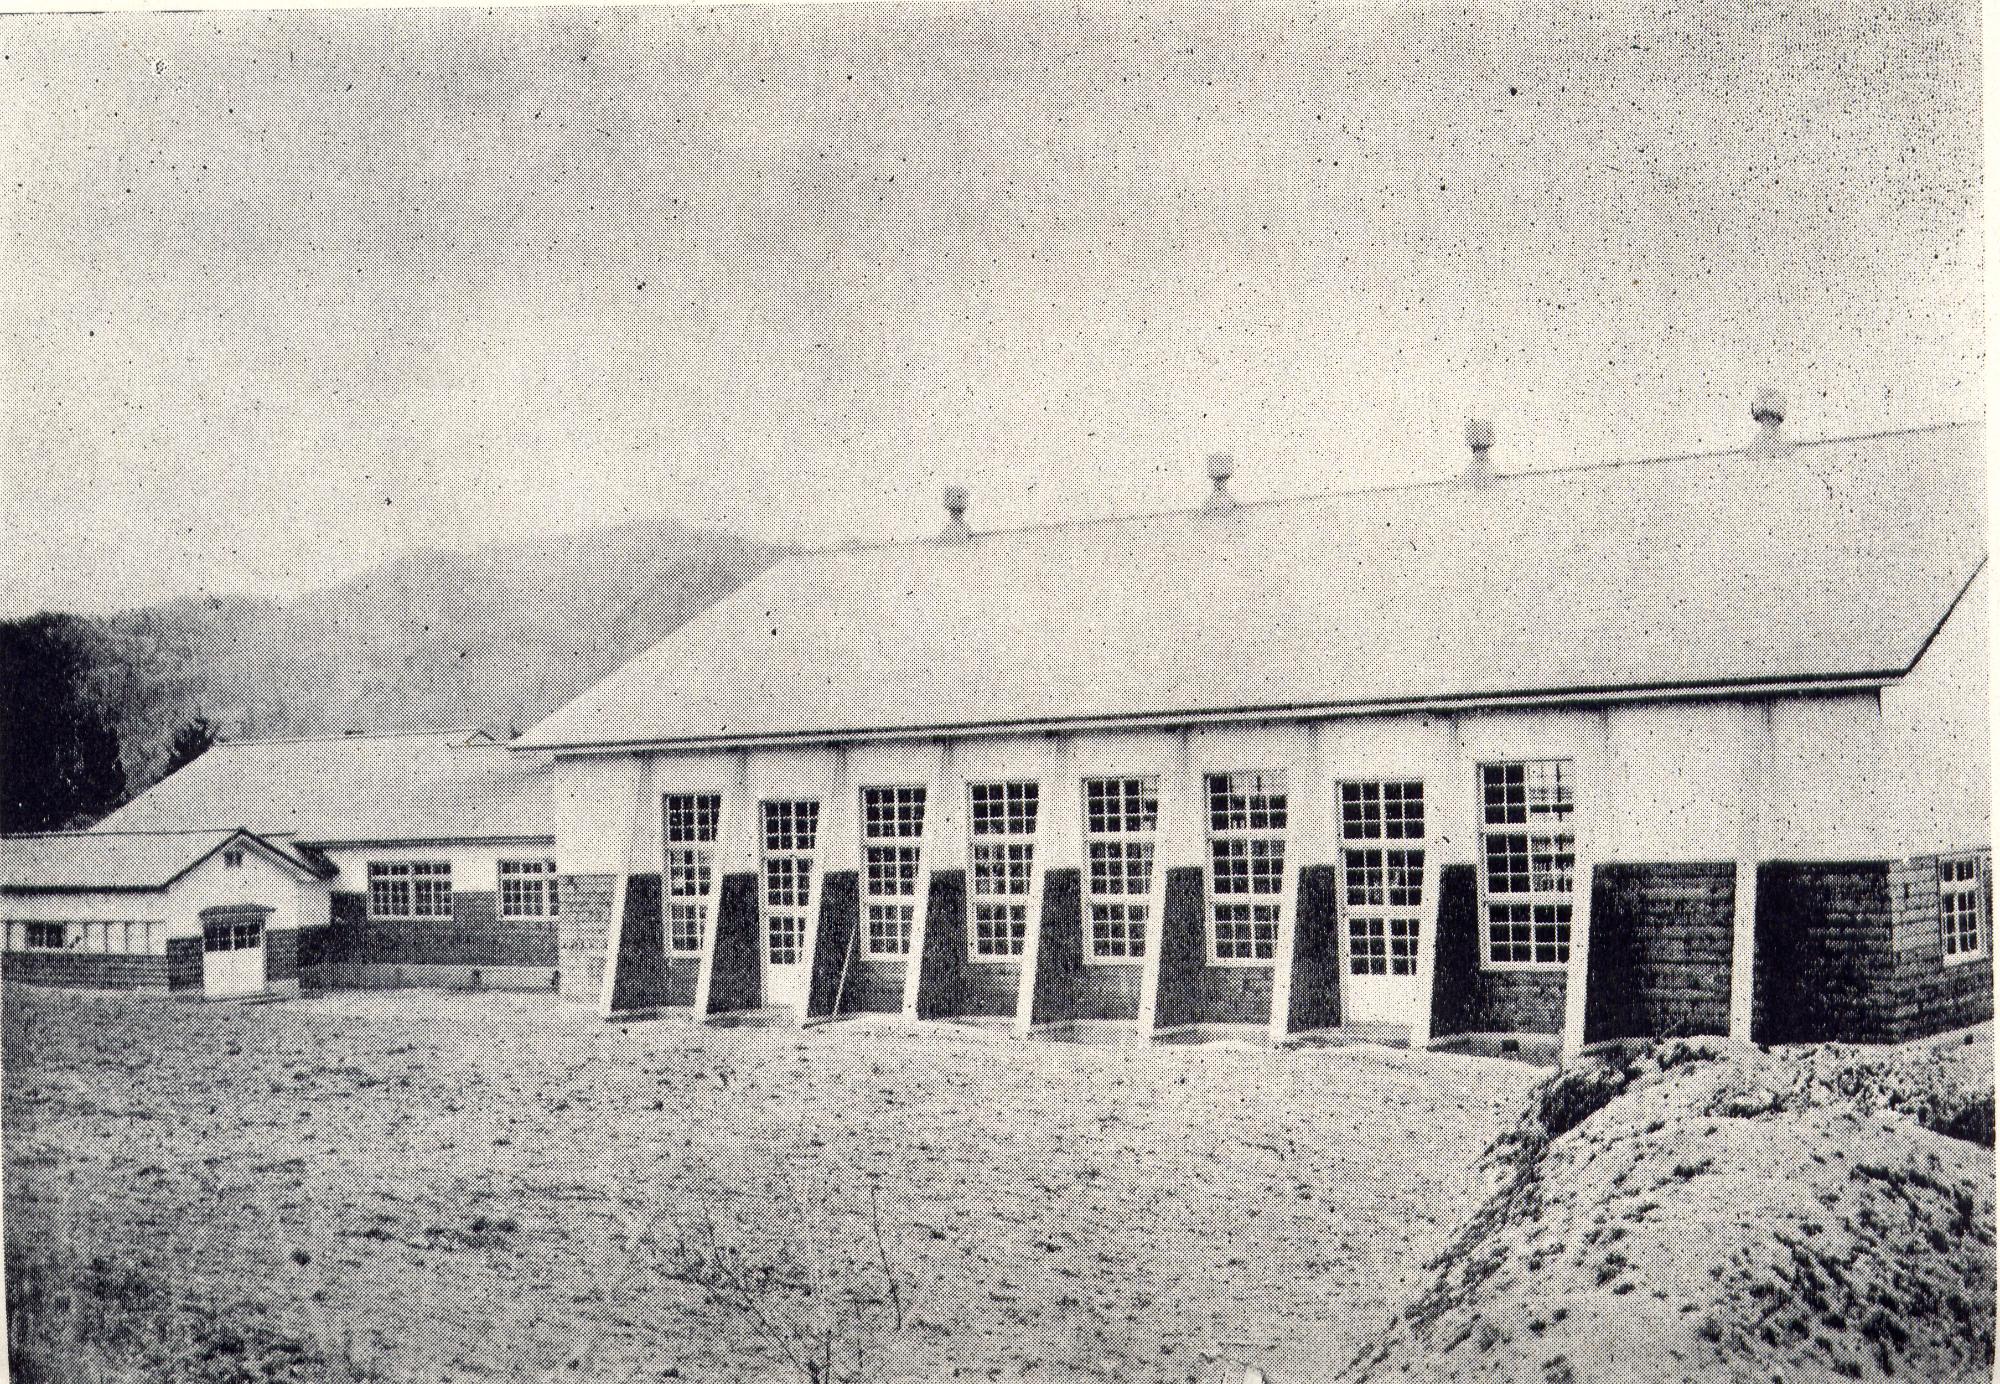 左側に校舎、右側に体育館が新しく造られた昭和30年頃の旧兼内小学校校舎の白黒写真